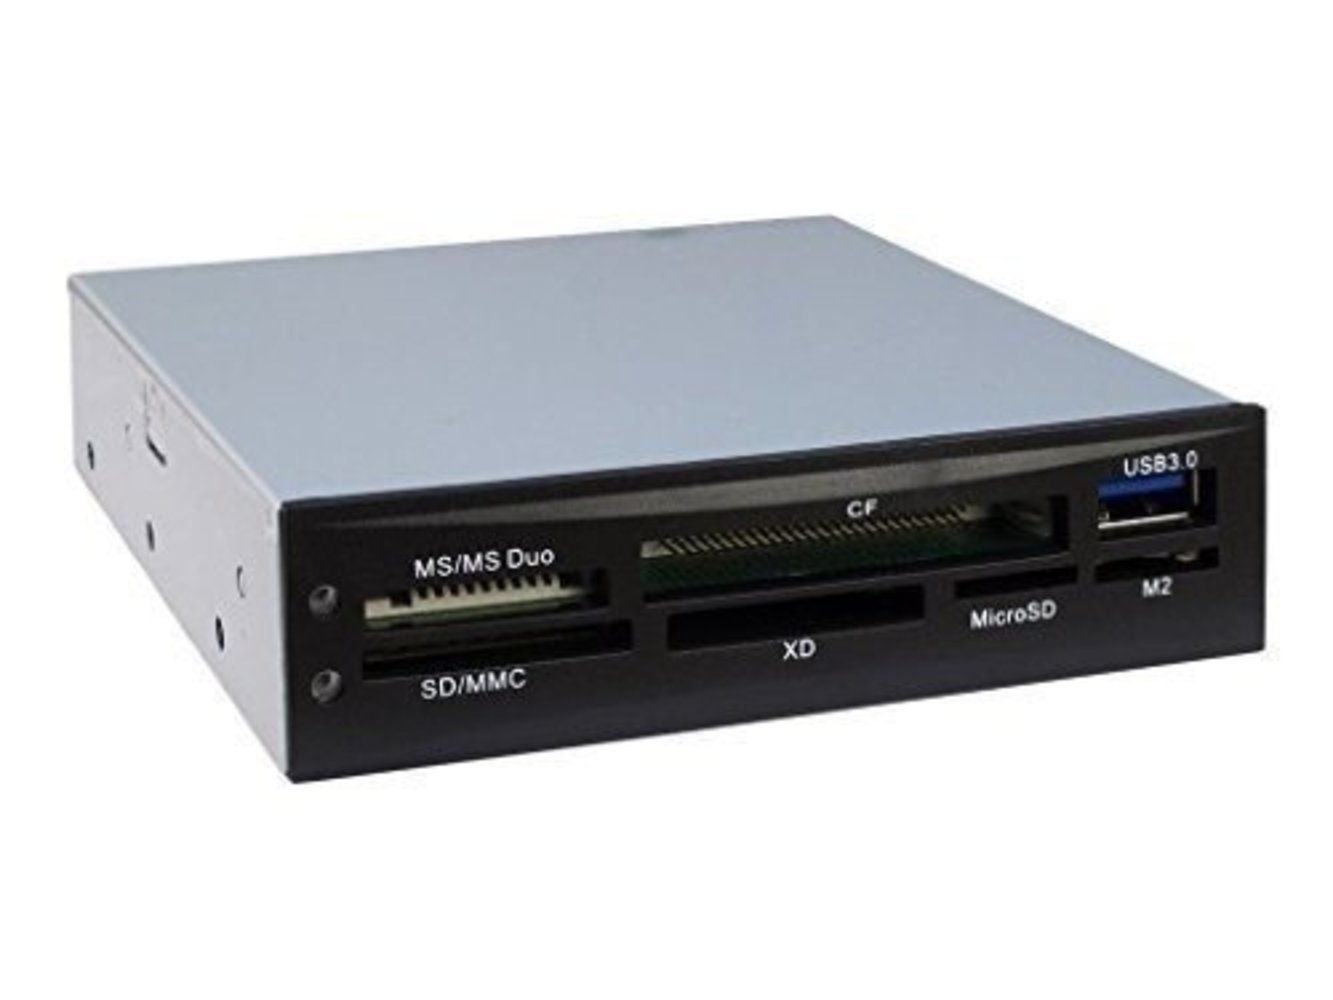  NITROX CI-01 Cardreader fuer diverse Kartenformate inkl ext USB 3.0-Anschluss